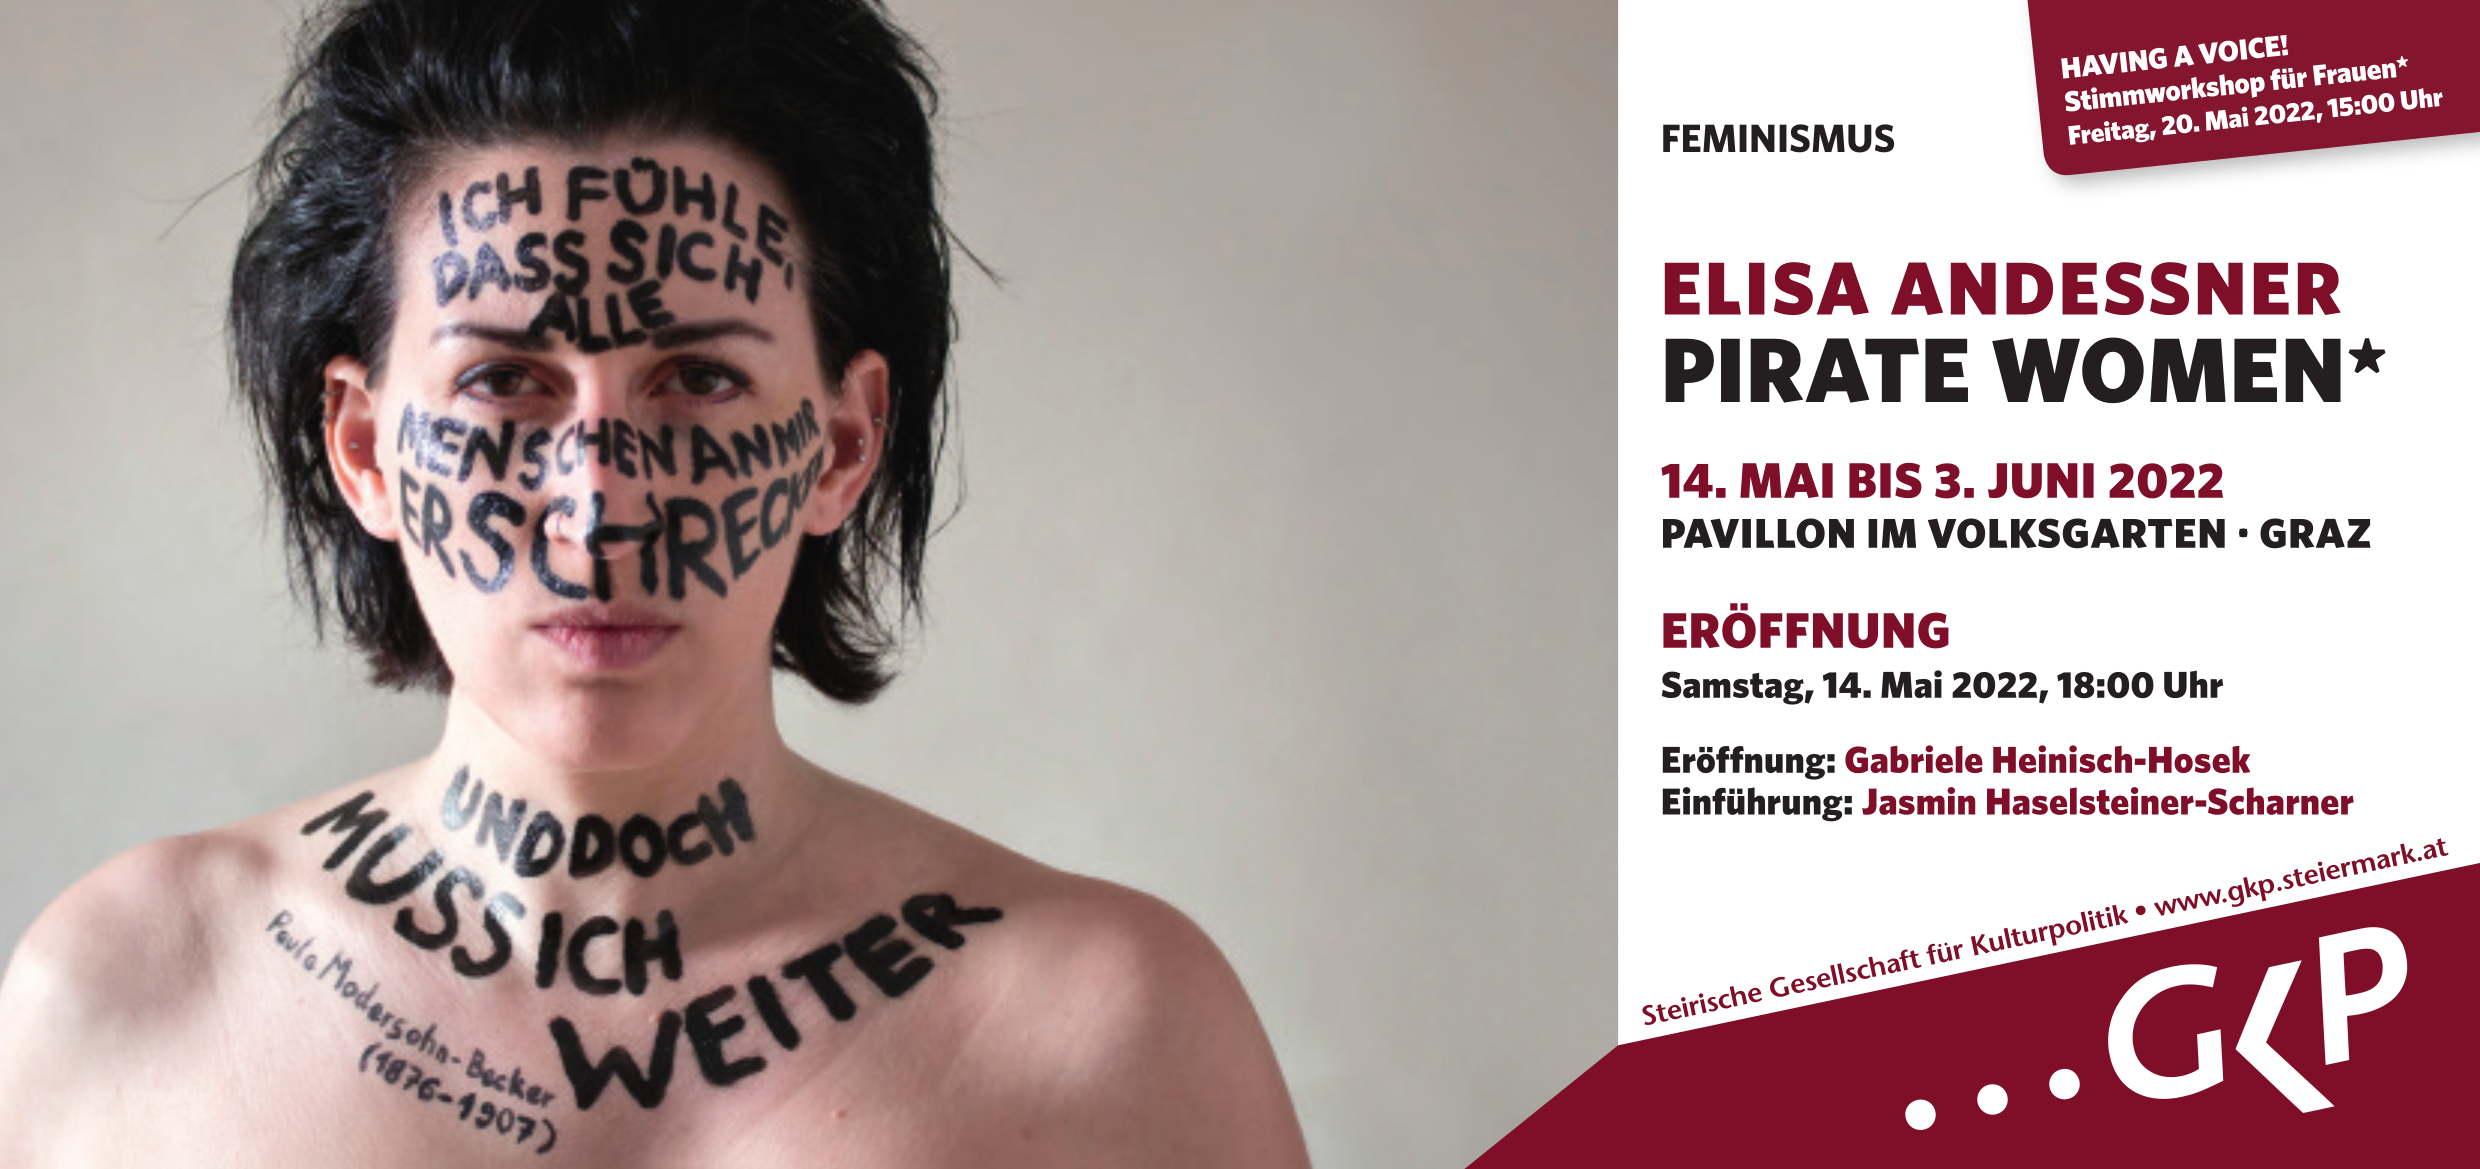 ELISA ANDESSNER "PIRATE WOMEN*"  © Elisa Andessner